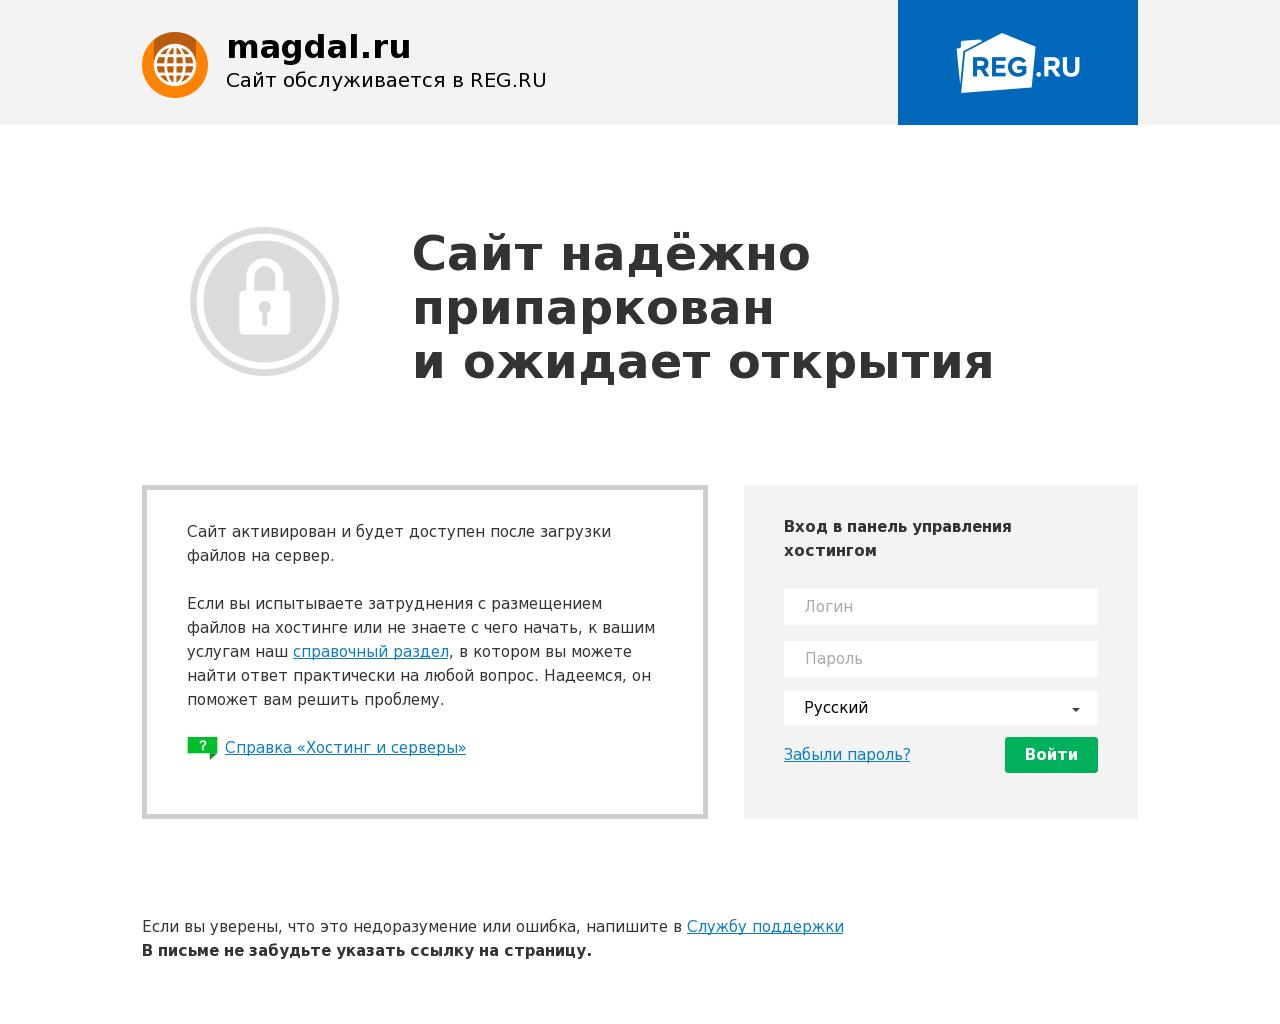 Изображение сайта magdal.ru в разрешении 1280x1024